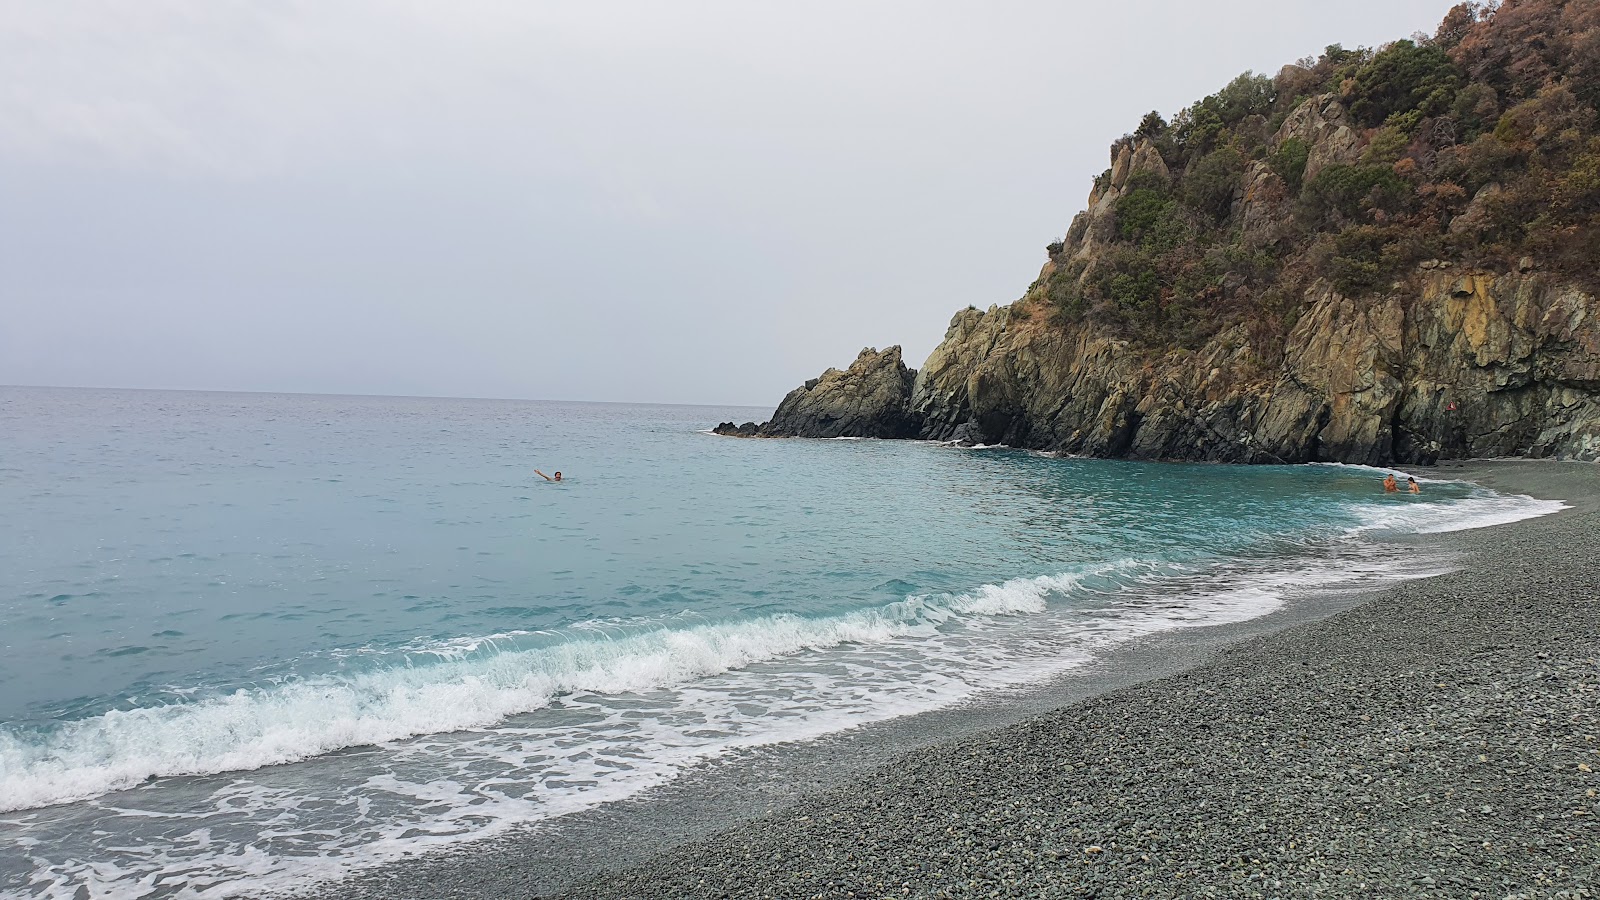 Spiaggia Arenon'in fotoğrafı gri ince çakıl taş yüzey ile